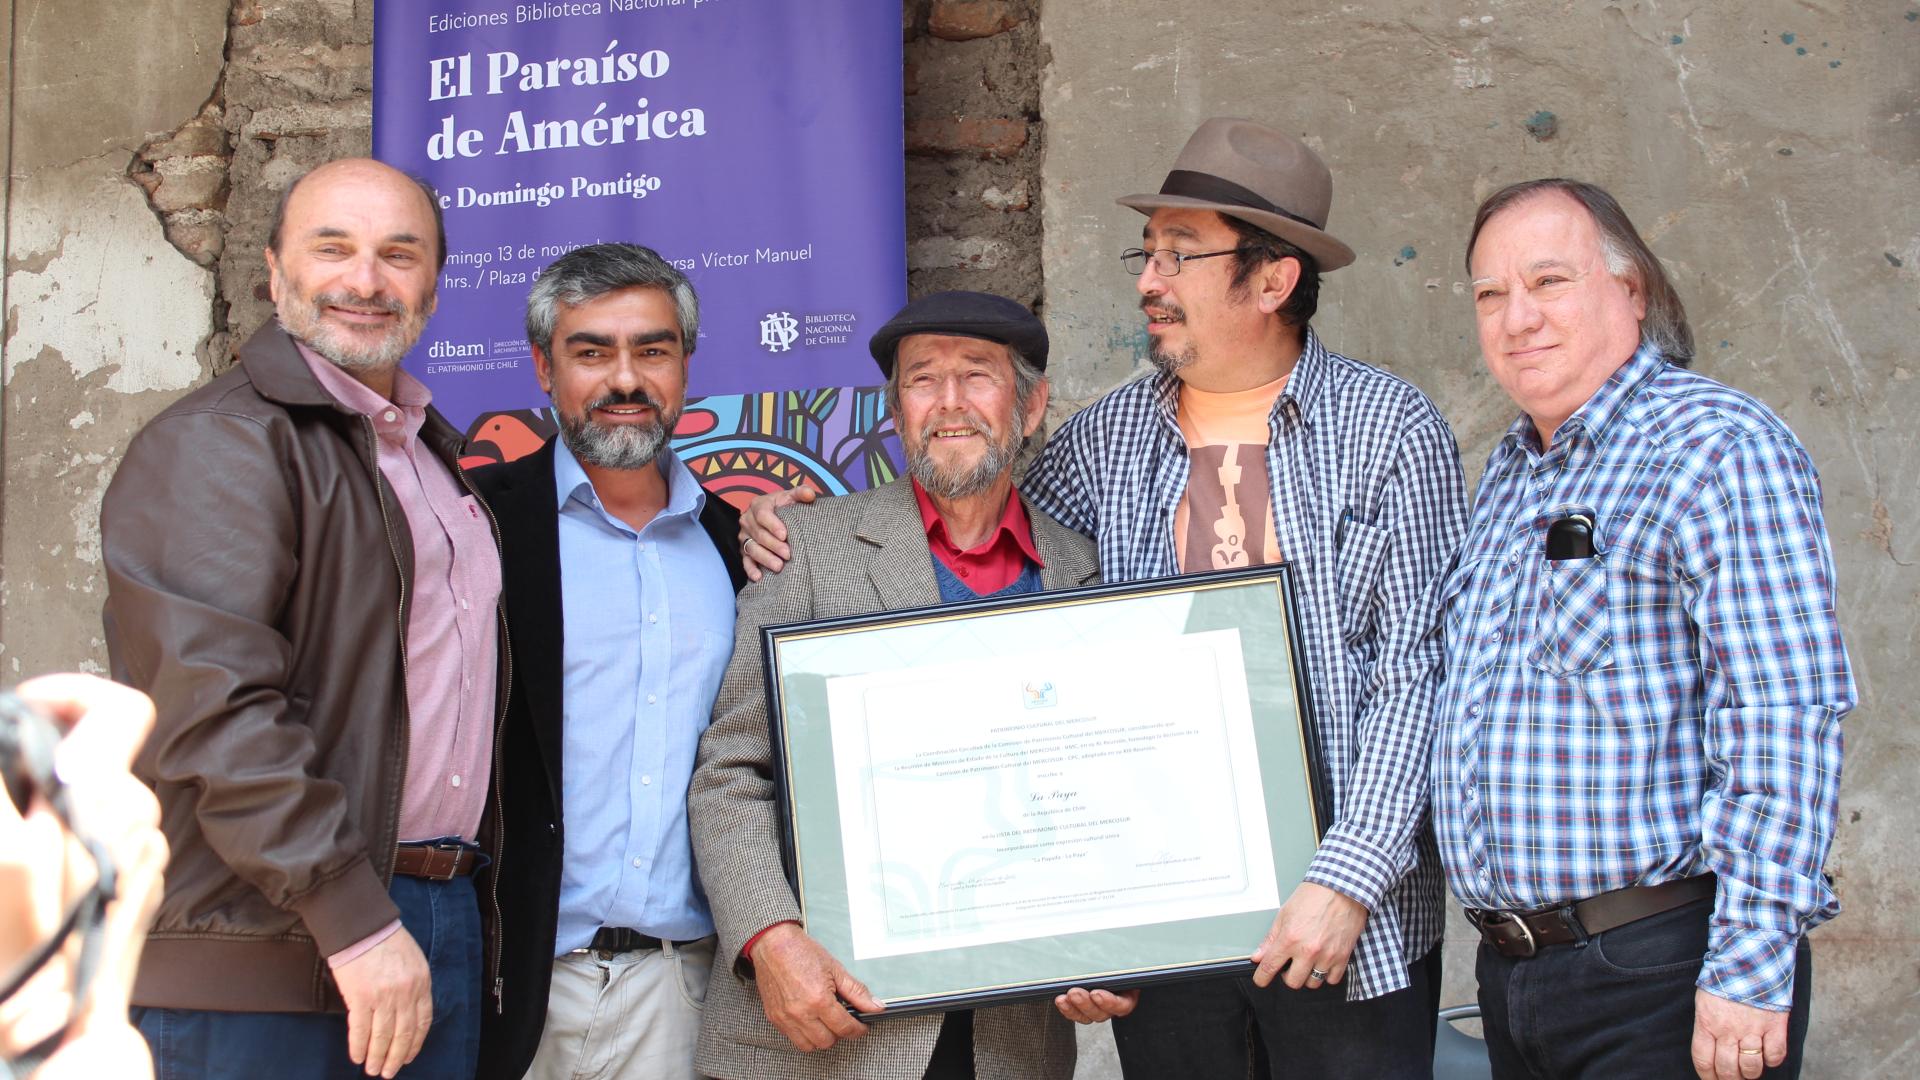 Ángel Cabeza, Rodrigo Aravena, Domingo Pontigo, Jorge Céspedes y Pedro Pablo Zegers en la entrega de certificados a los payadores por reconocimiento Mercosur.